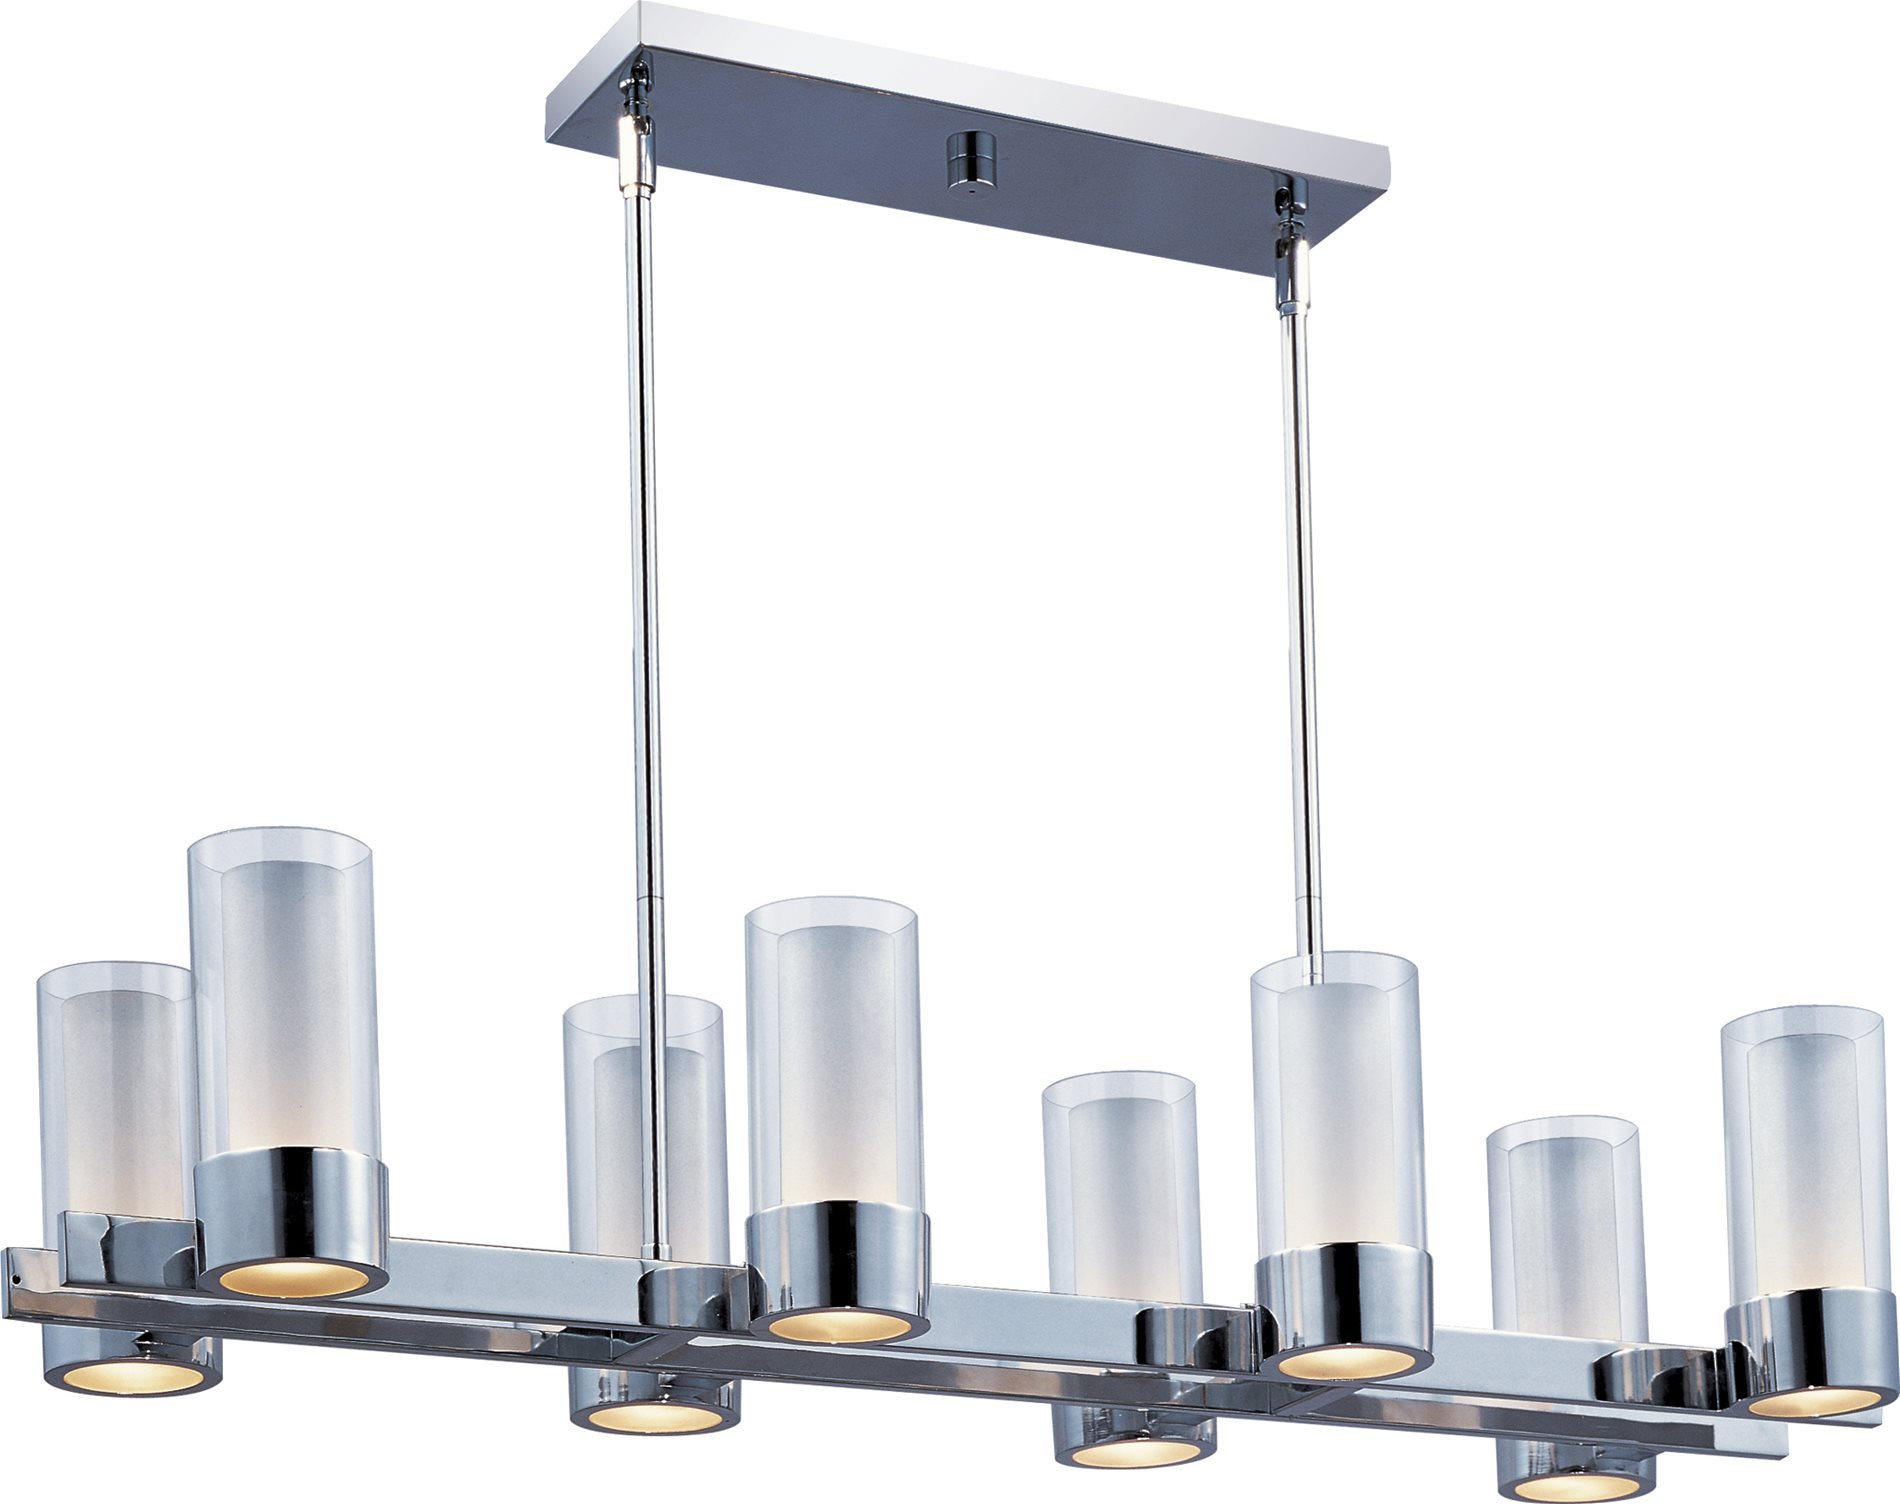 Rectangular Light Fixture For Kitchen
 Maxim Lighting CLFTPC Silo Modern Contemporary